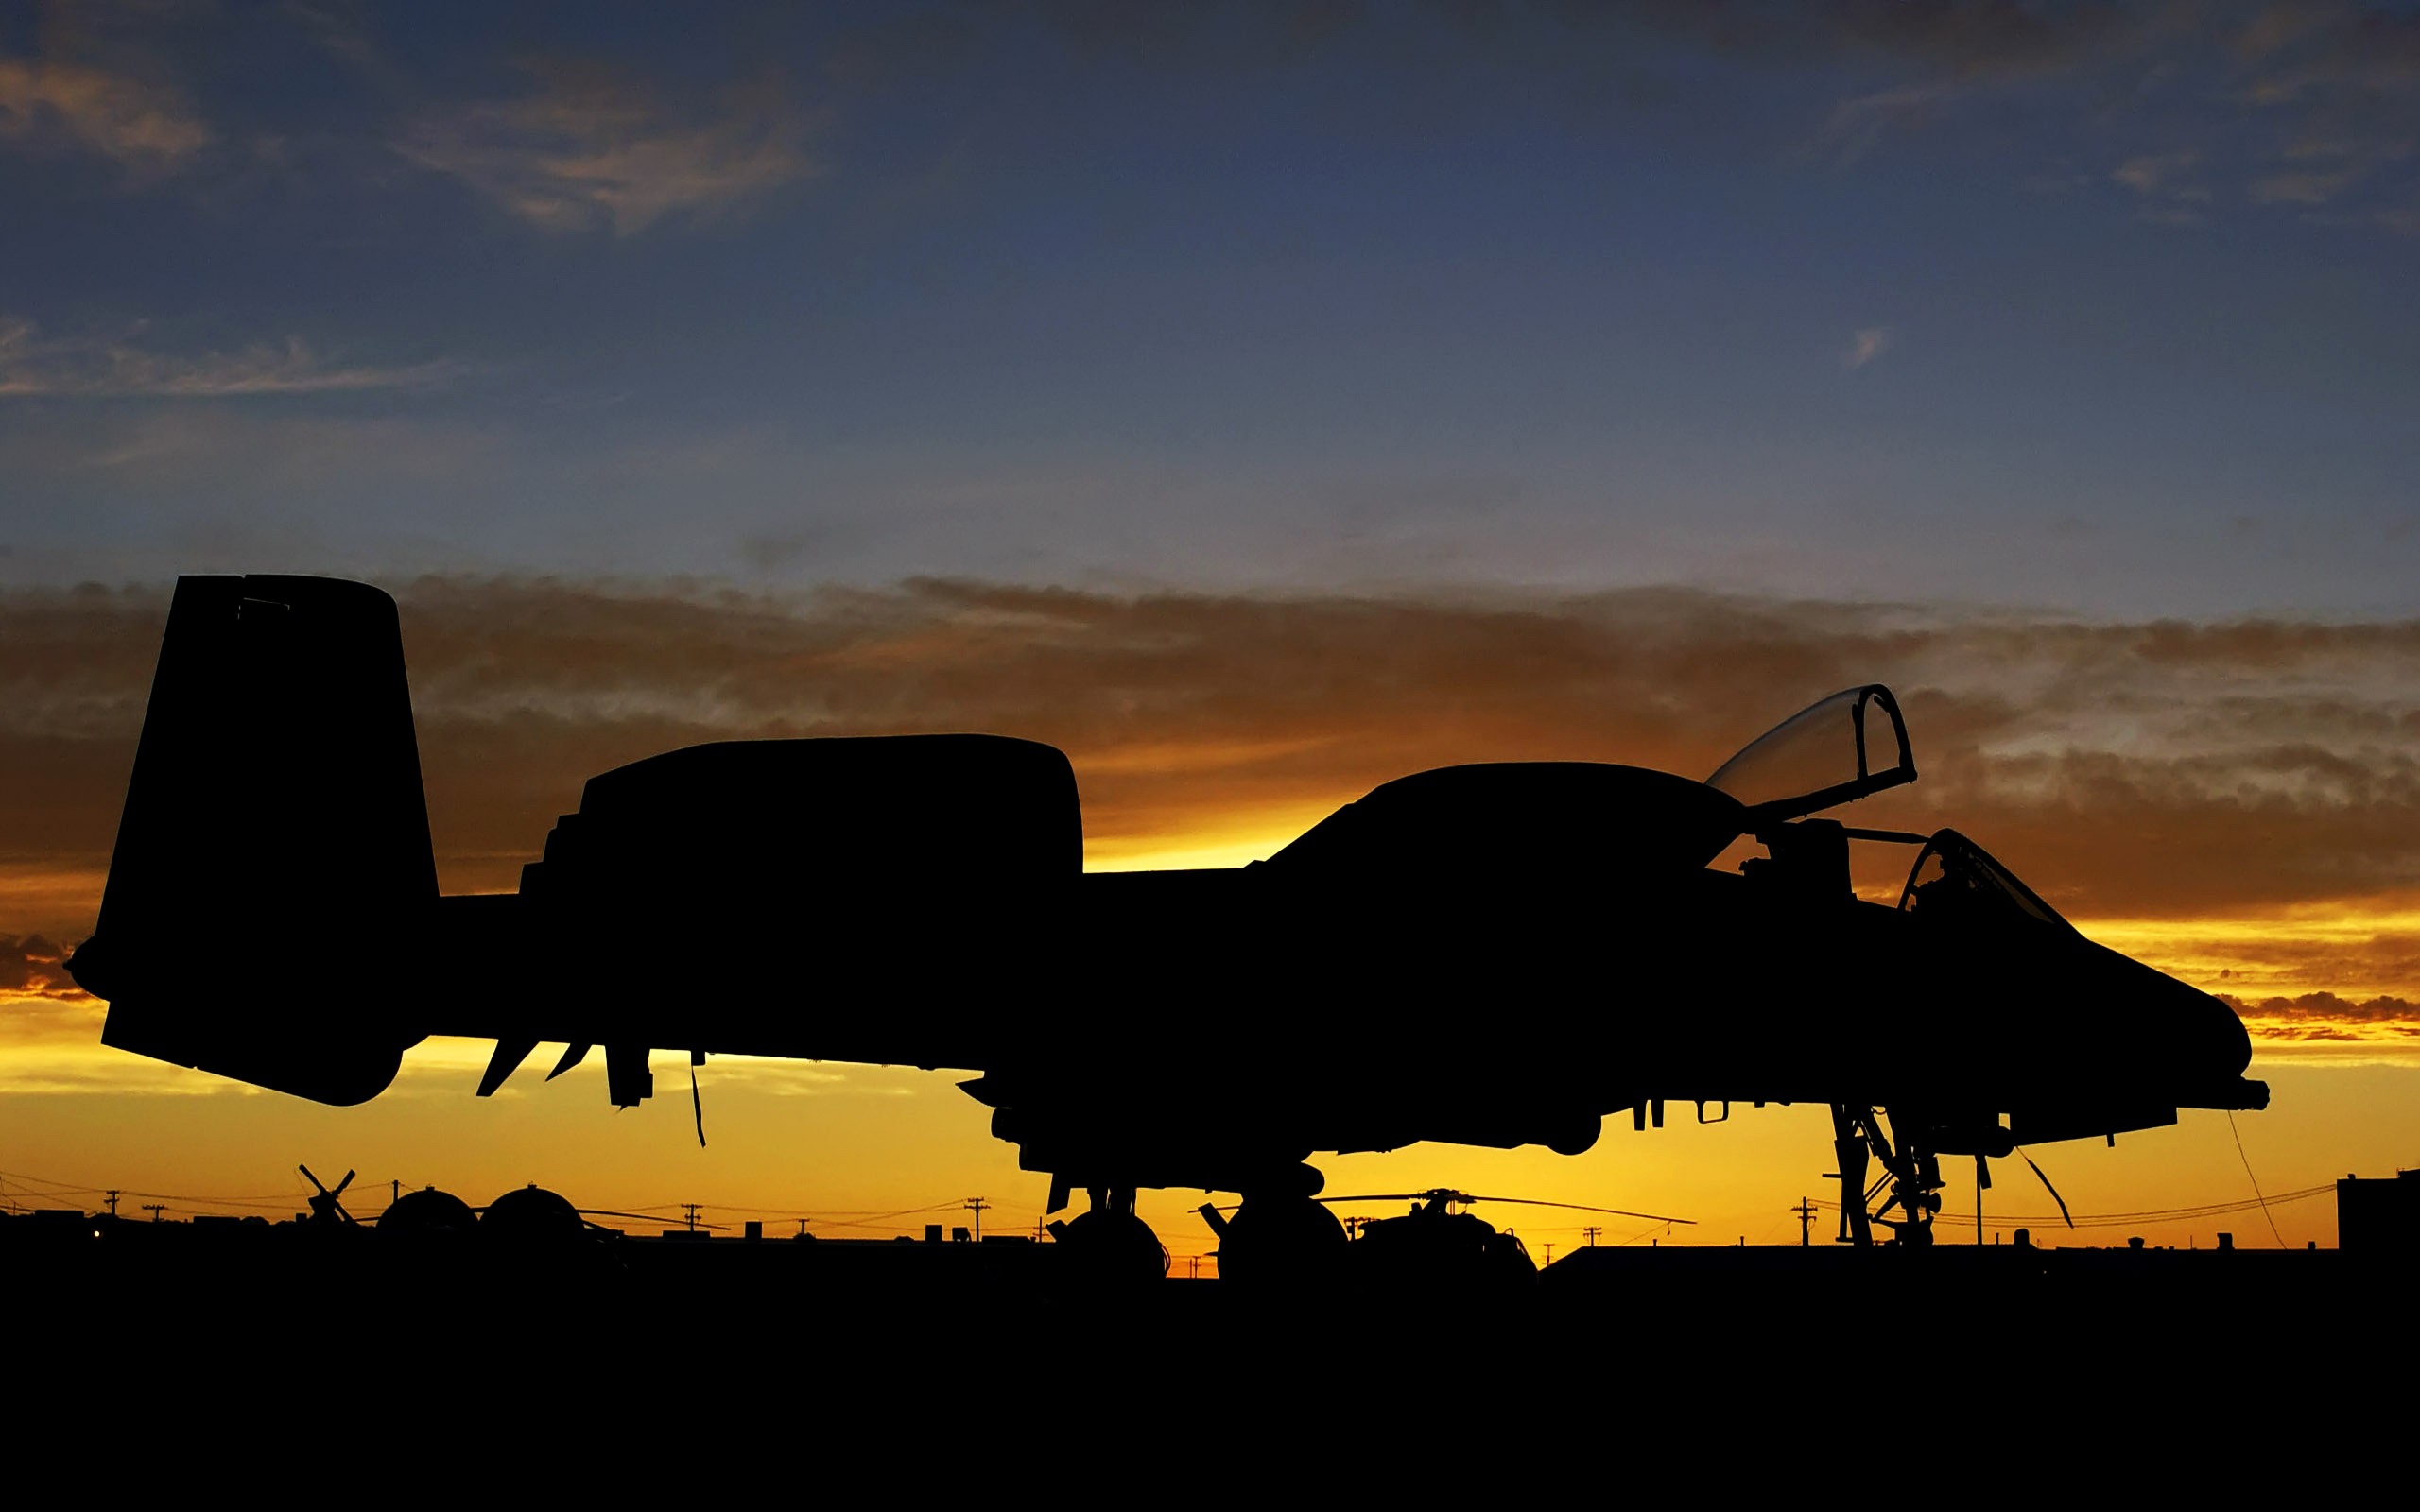 Fairchild A 10 Thunderbolt II, Aircraft, Military aircraft, Silhouette, Sunset Wallpaper